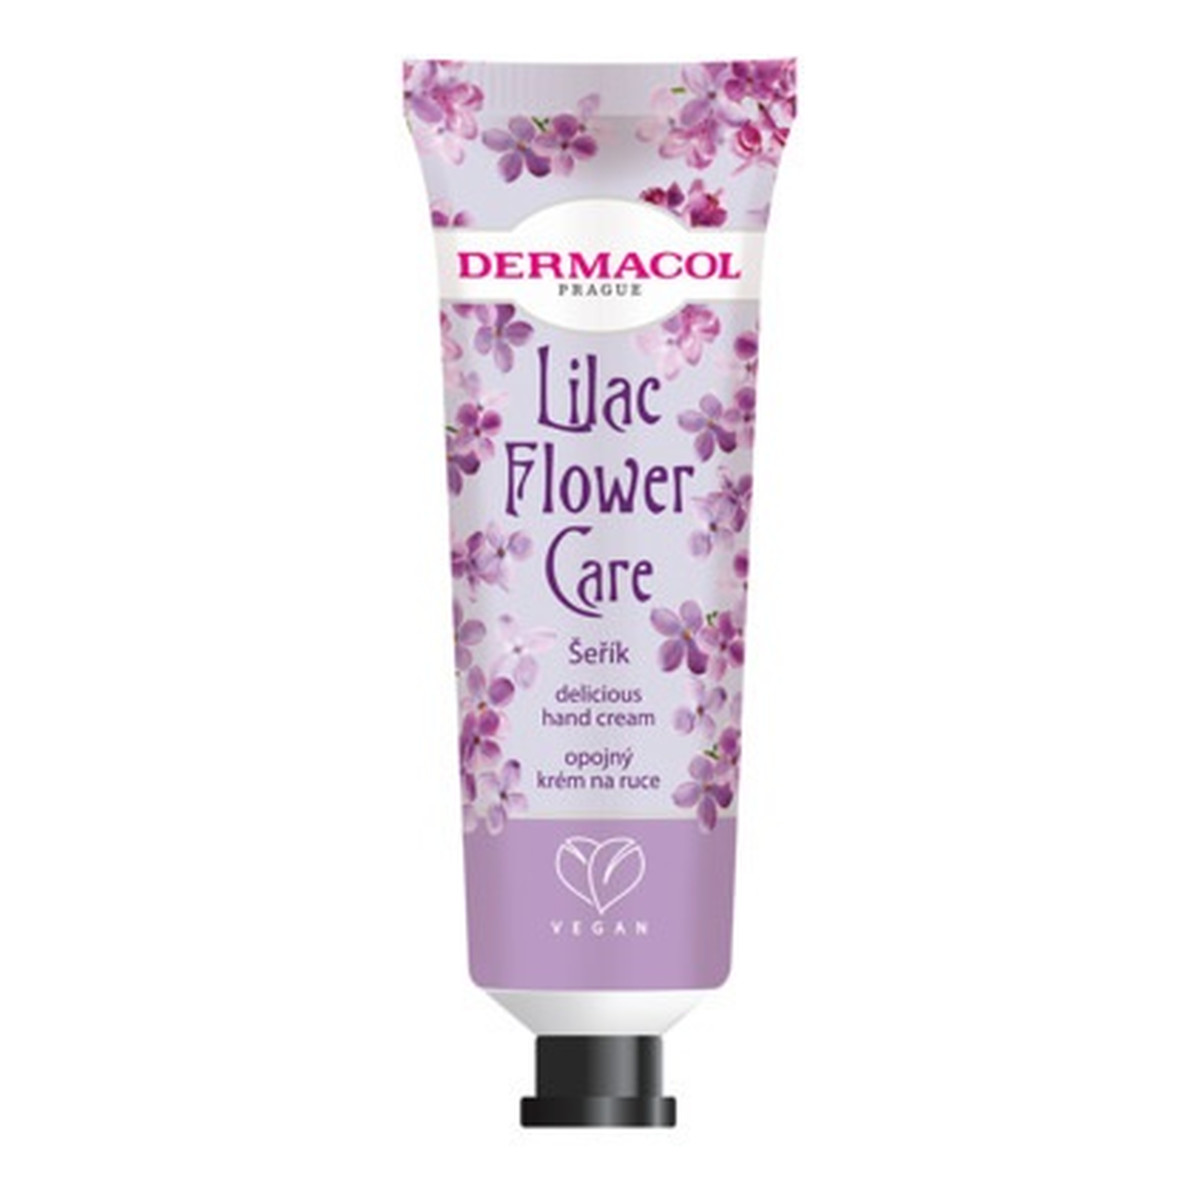 Dermacol Flower Care Delicious Hand Cream Krem do rąk lilac 30ml